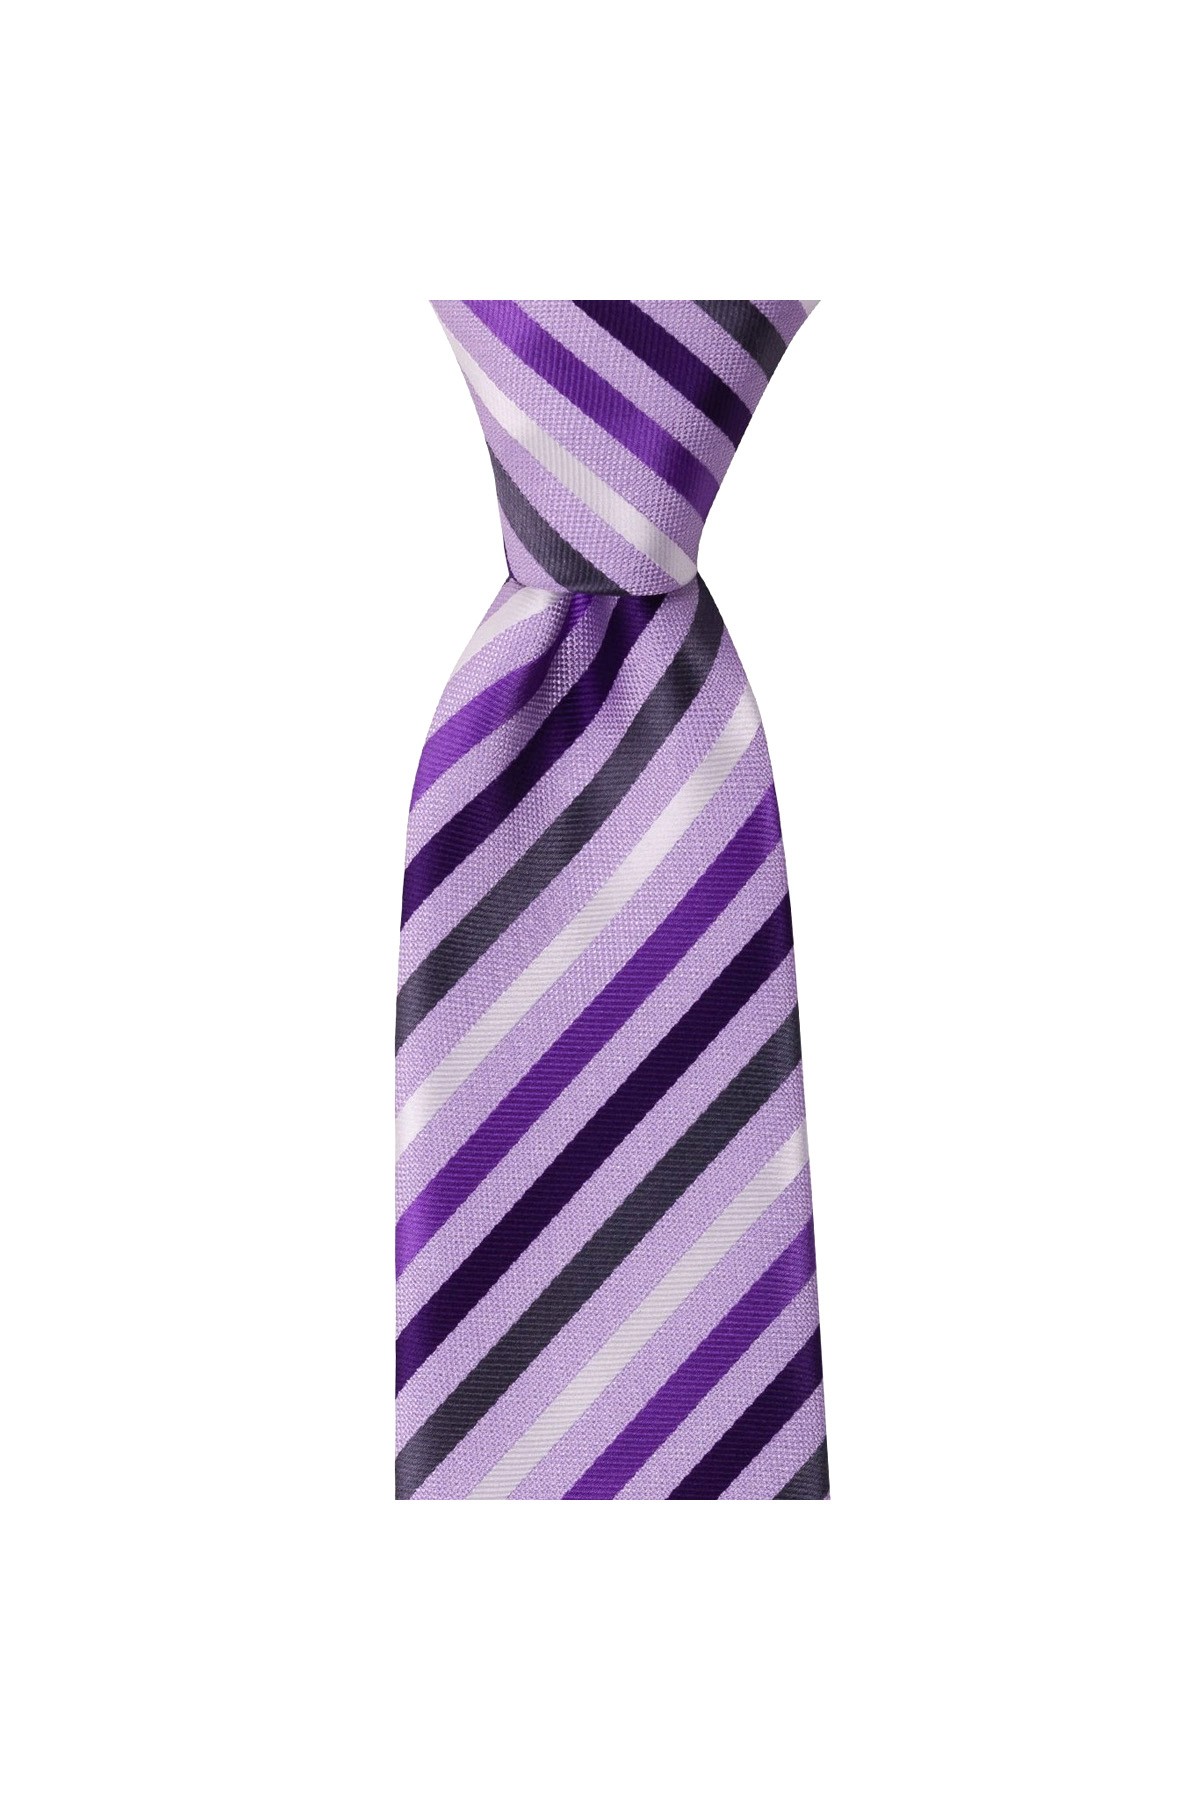 Çok çizgili 8 cm genişliğinde klasik kravat - Lila